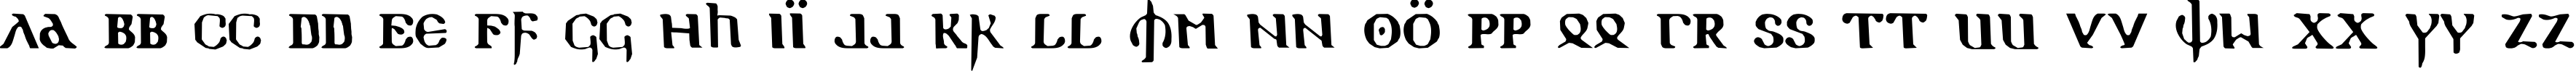 Пример написания английского алфавита шрифтом Holy Empire